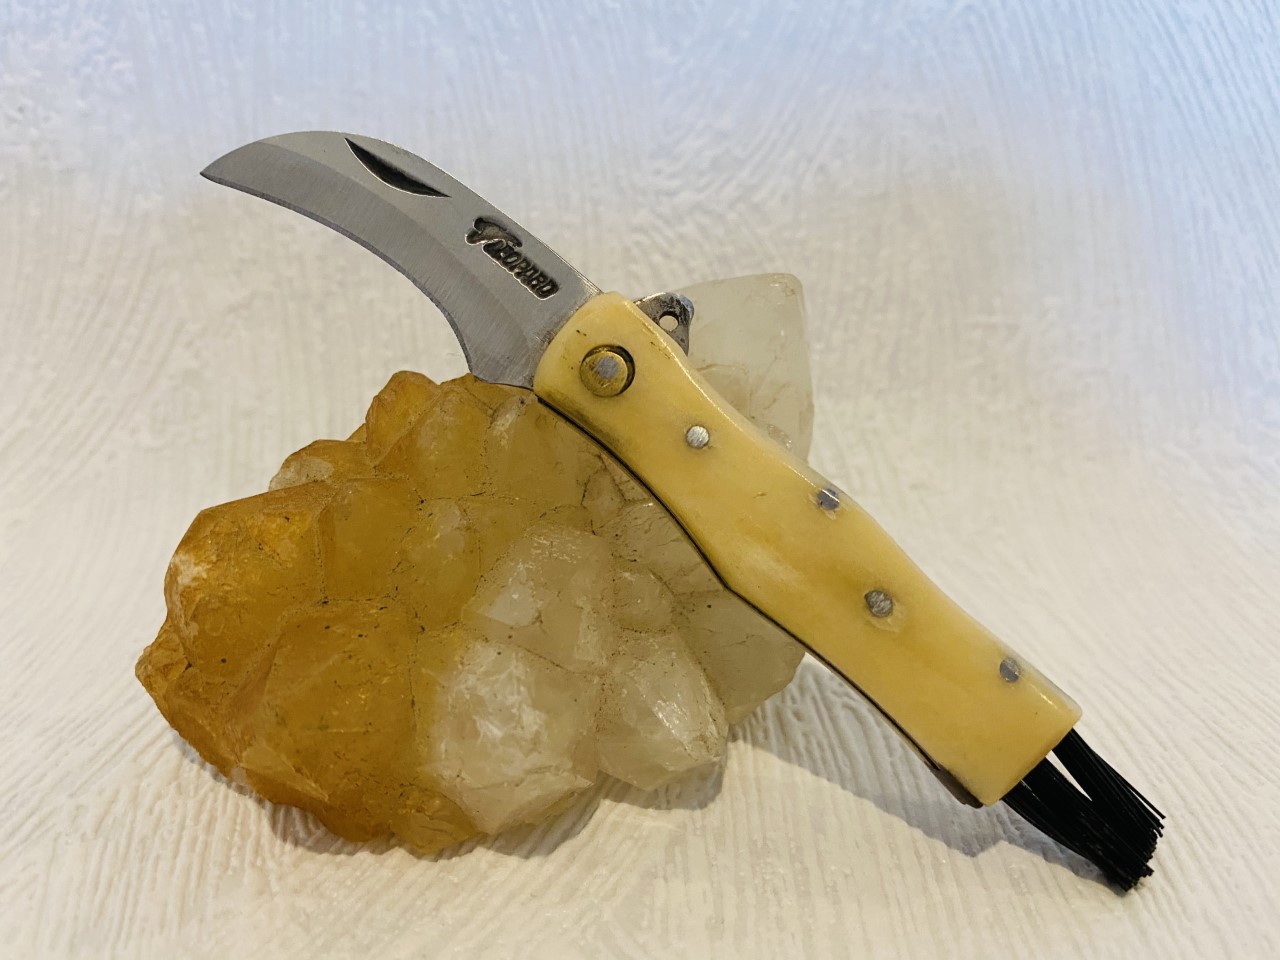 Mini couteau de poche champignon au prix de 8,50 euros.